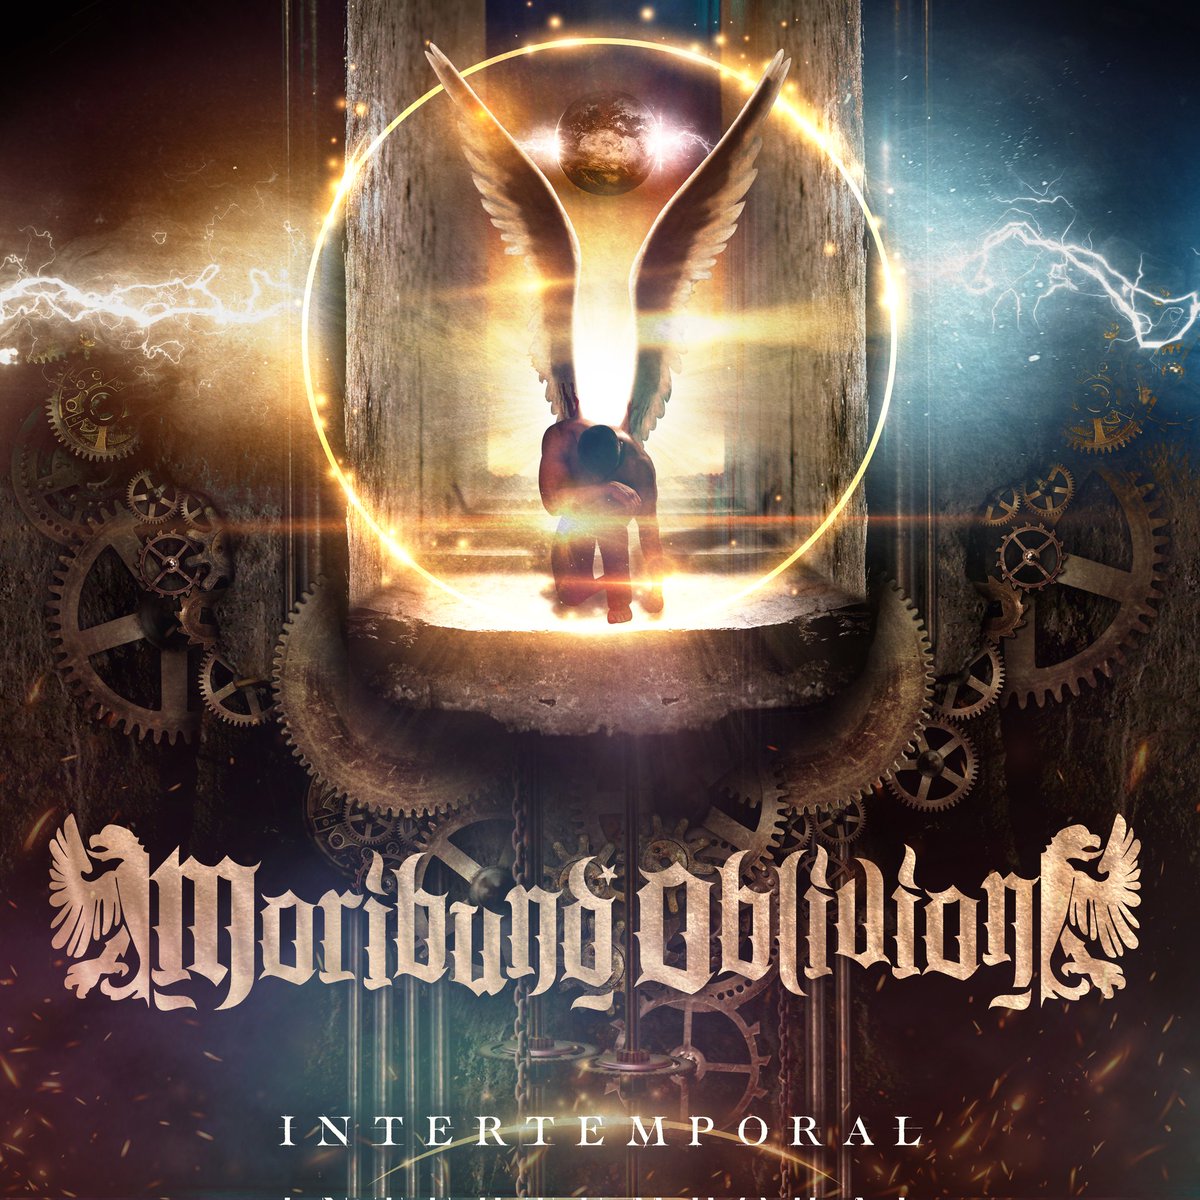 Cover art of Moribund Oblivion's new album INTERTEMPORAL. The album will be released from Talheim Records Germany in 2023. 🤘

Yeni albümümüz INTERTEMPORAL'ın kapağı. Albüm önümüzdeki sene piyasada olacaktır.

#moribundoblivion #blackmetal #newalbum #intertemporal #coverart